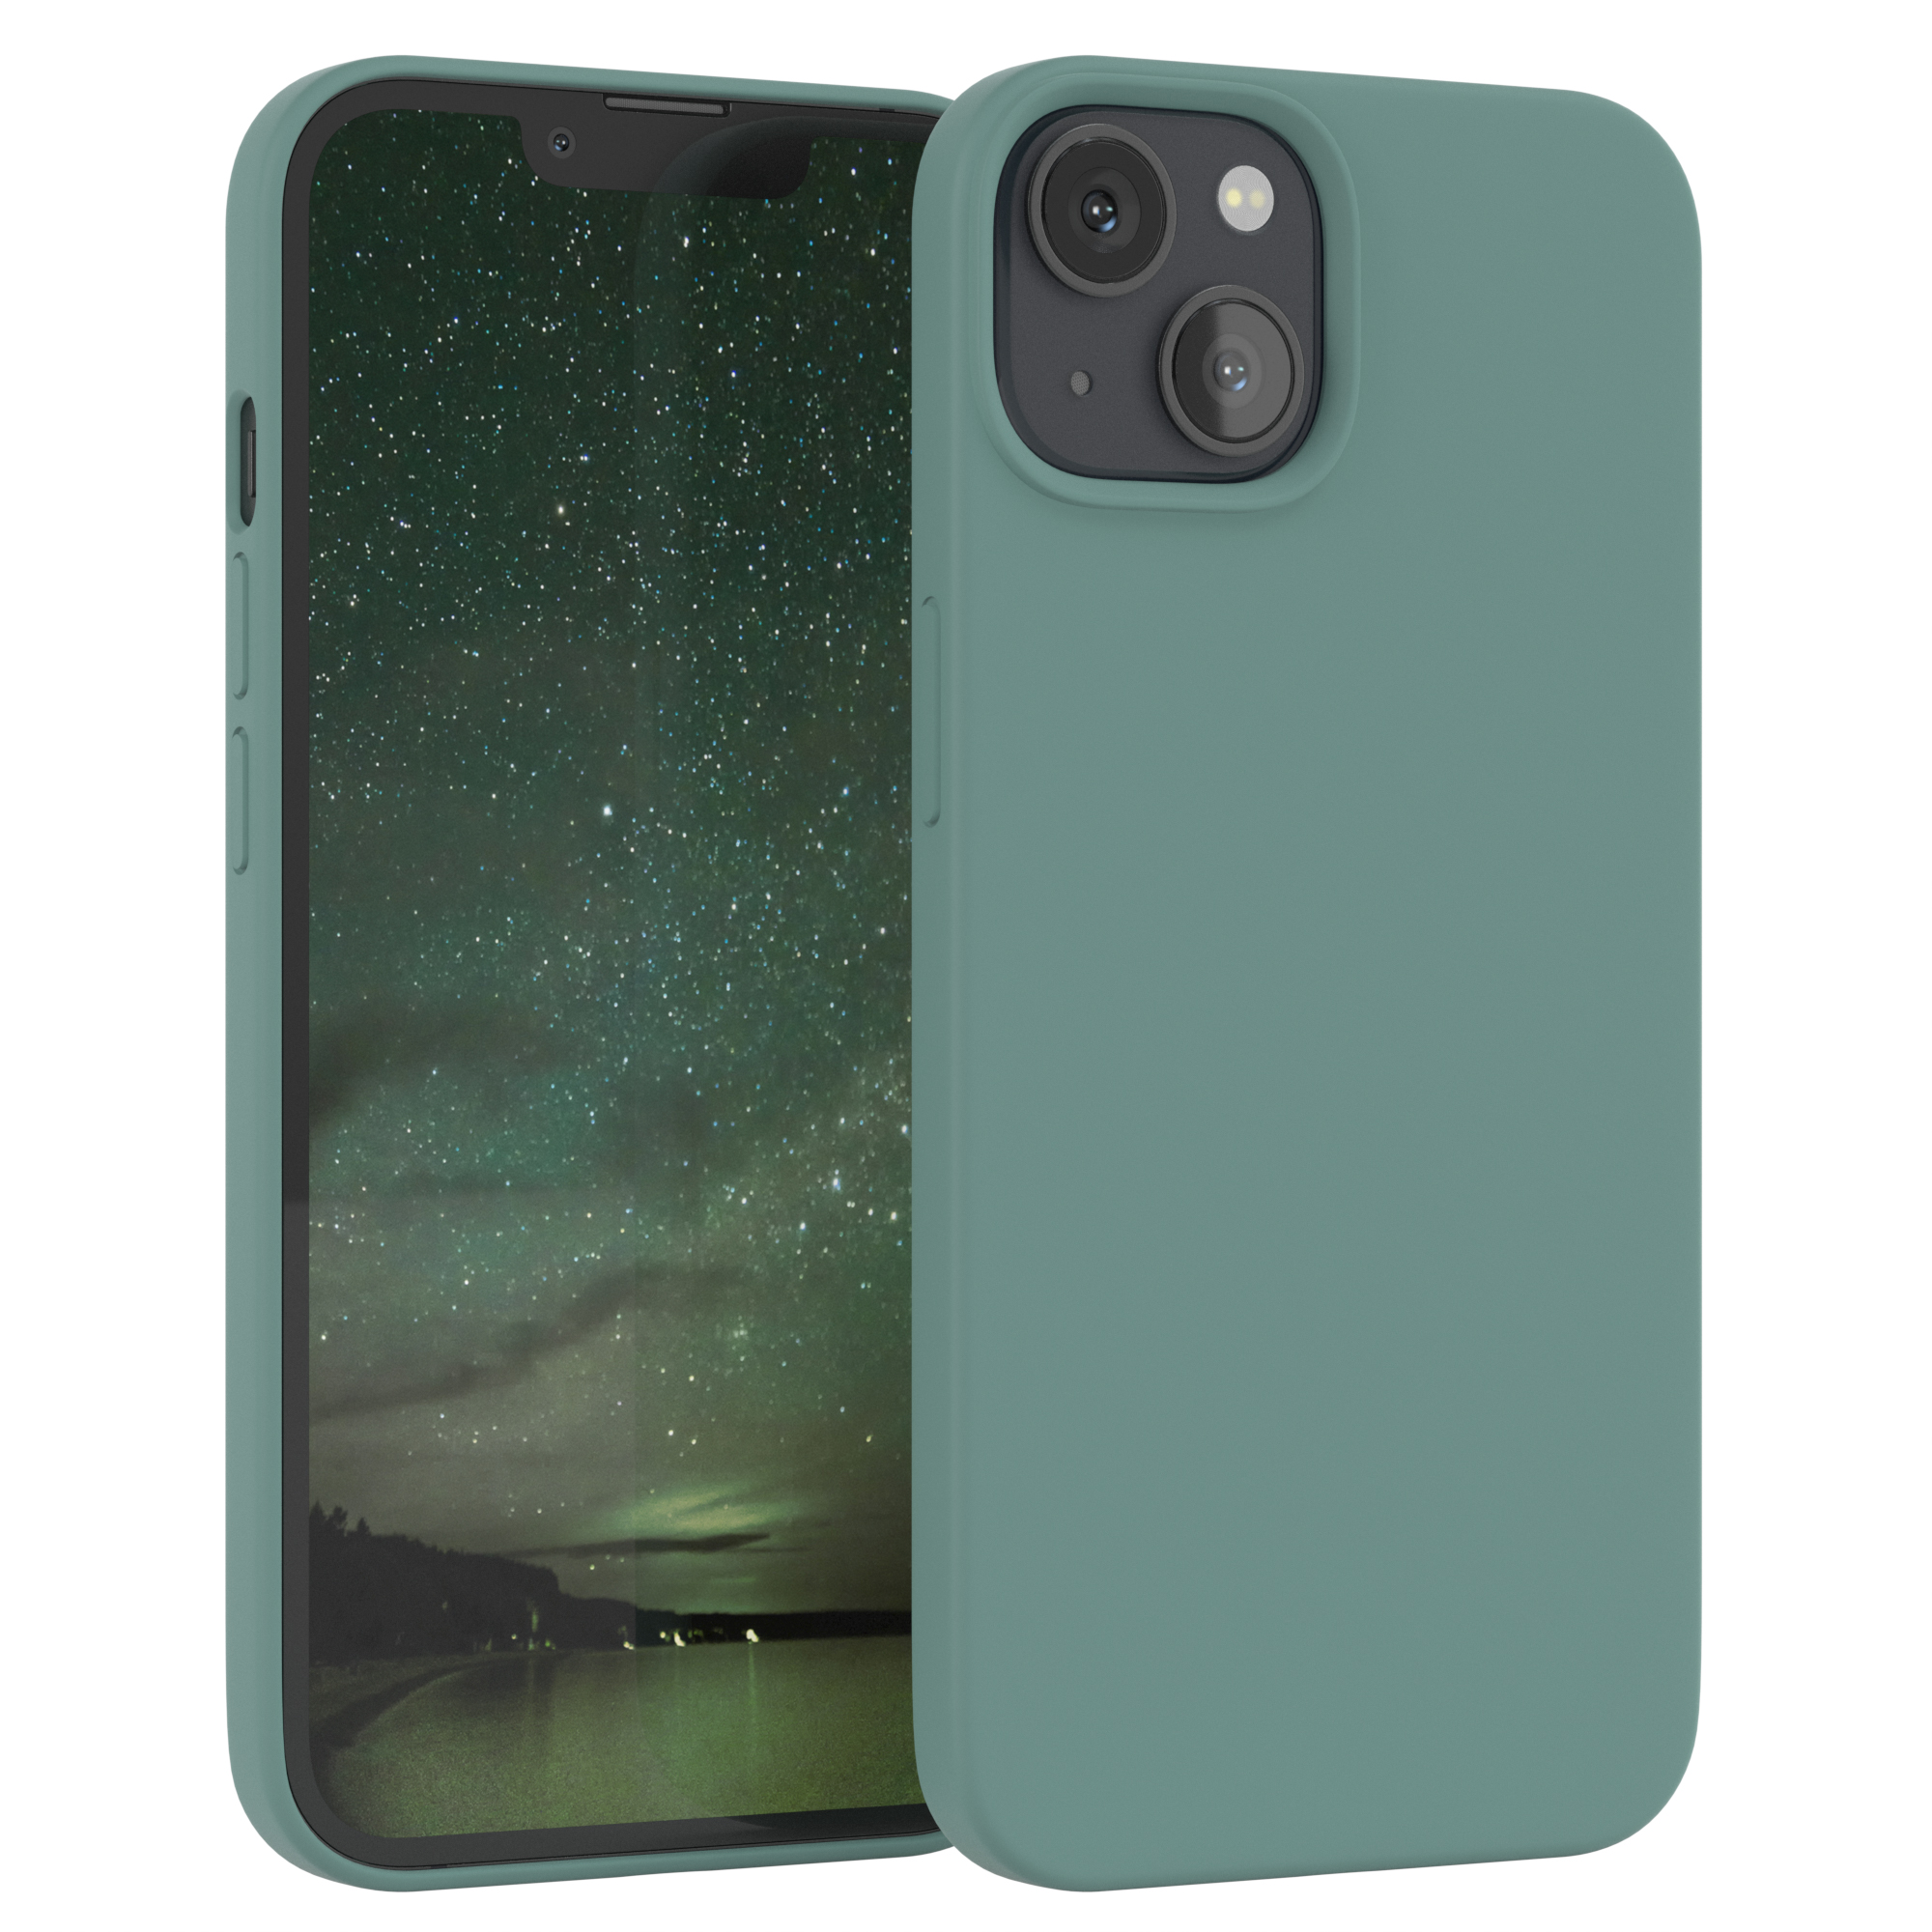 EAZY CASE Premium Silikon Handycase, 13, Grün iPhone / Apple, Nachtgrün Backcover